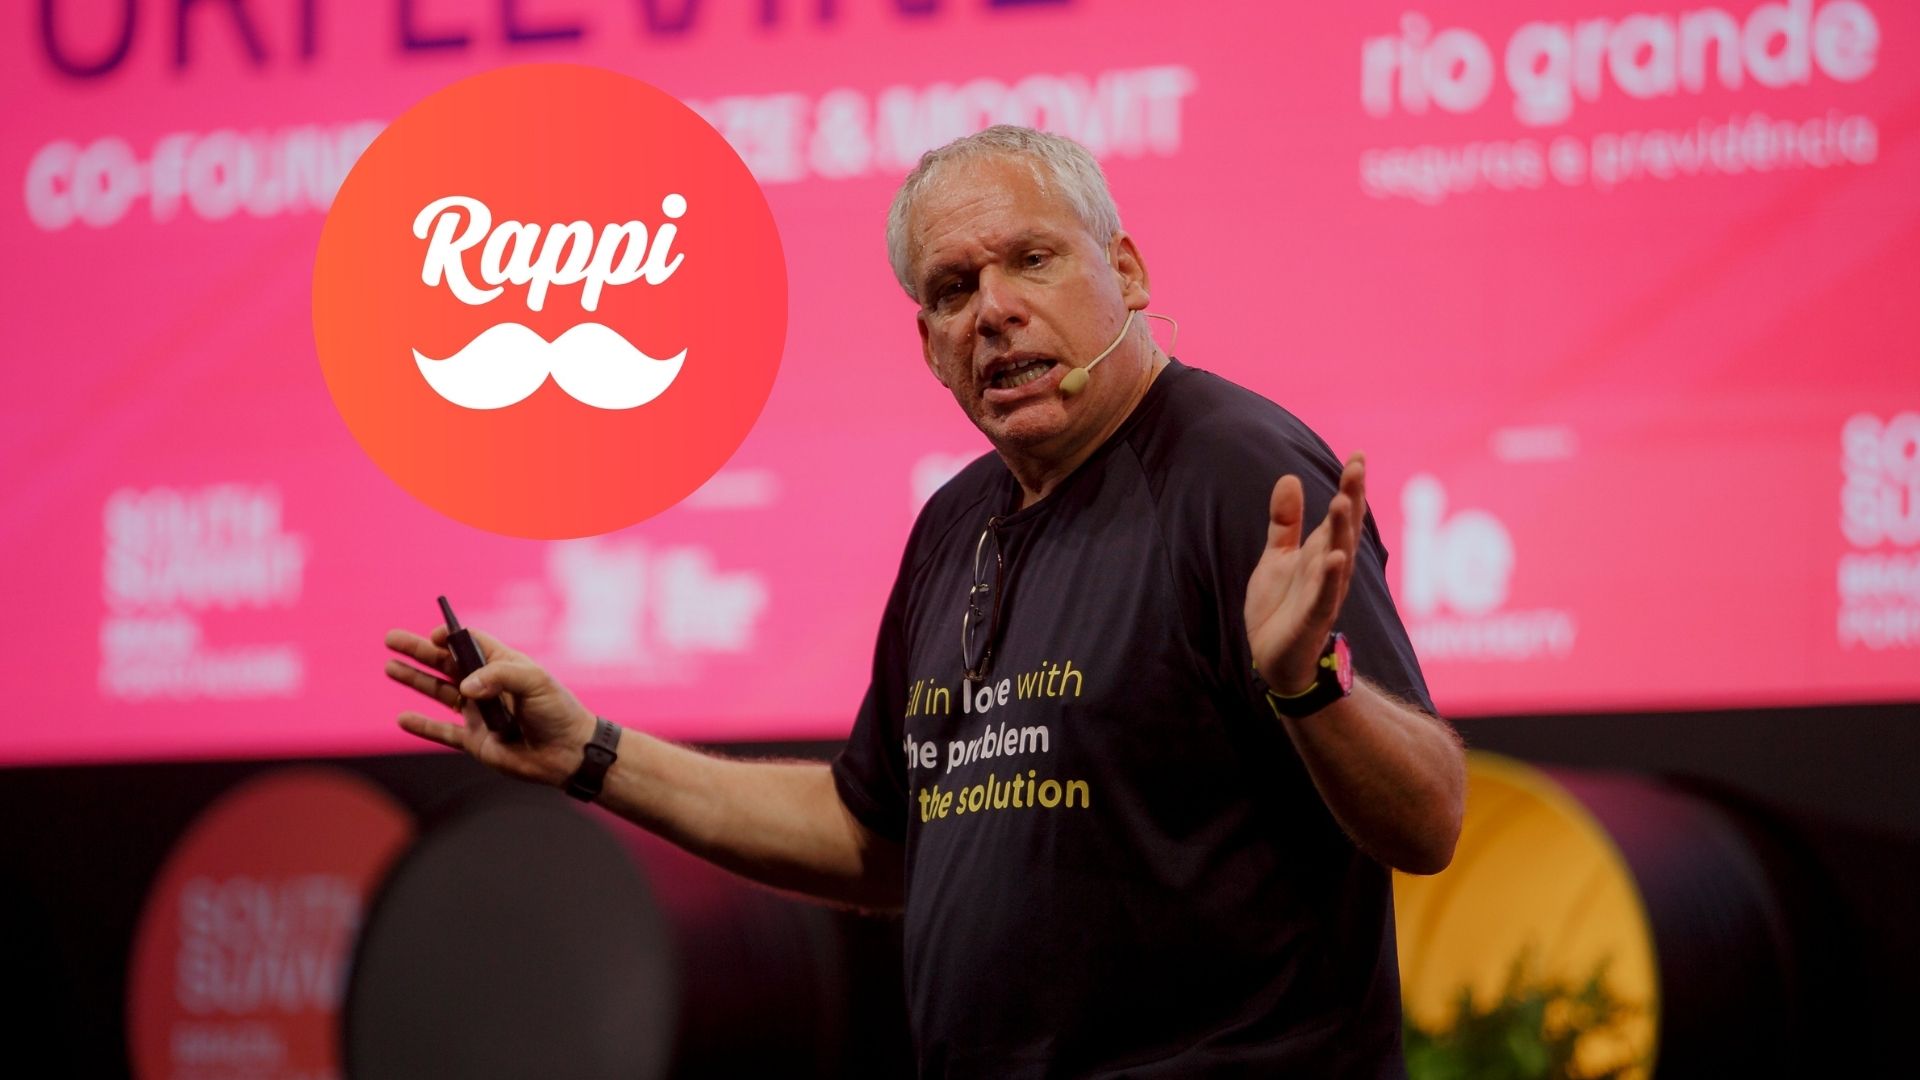 Imagen de Uri Levine, creador de Waze, por nota sobre Rappi y futuro de aplicaciones en Colombia